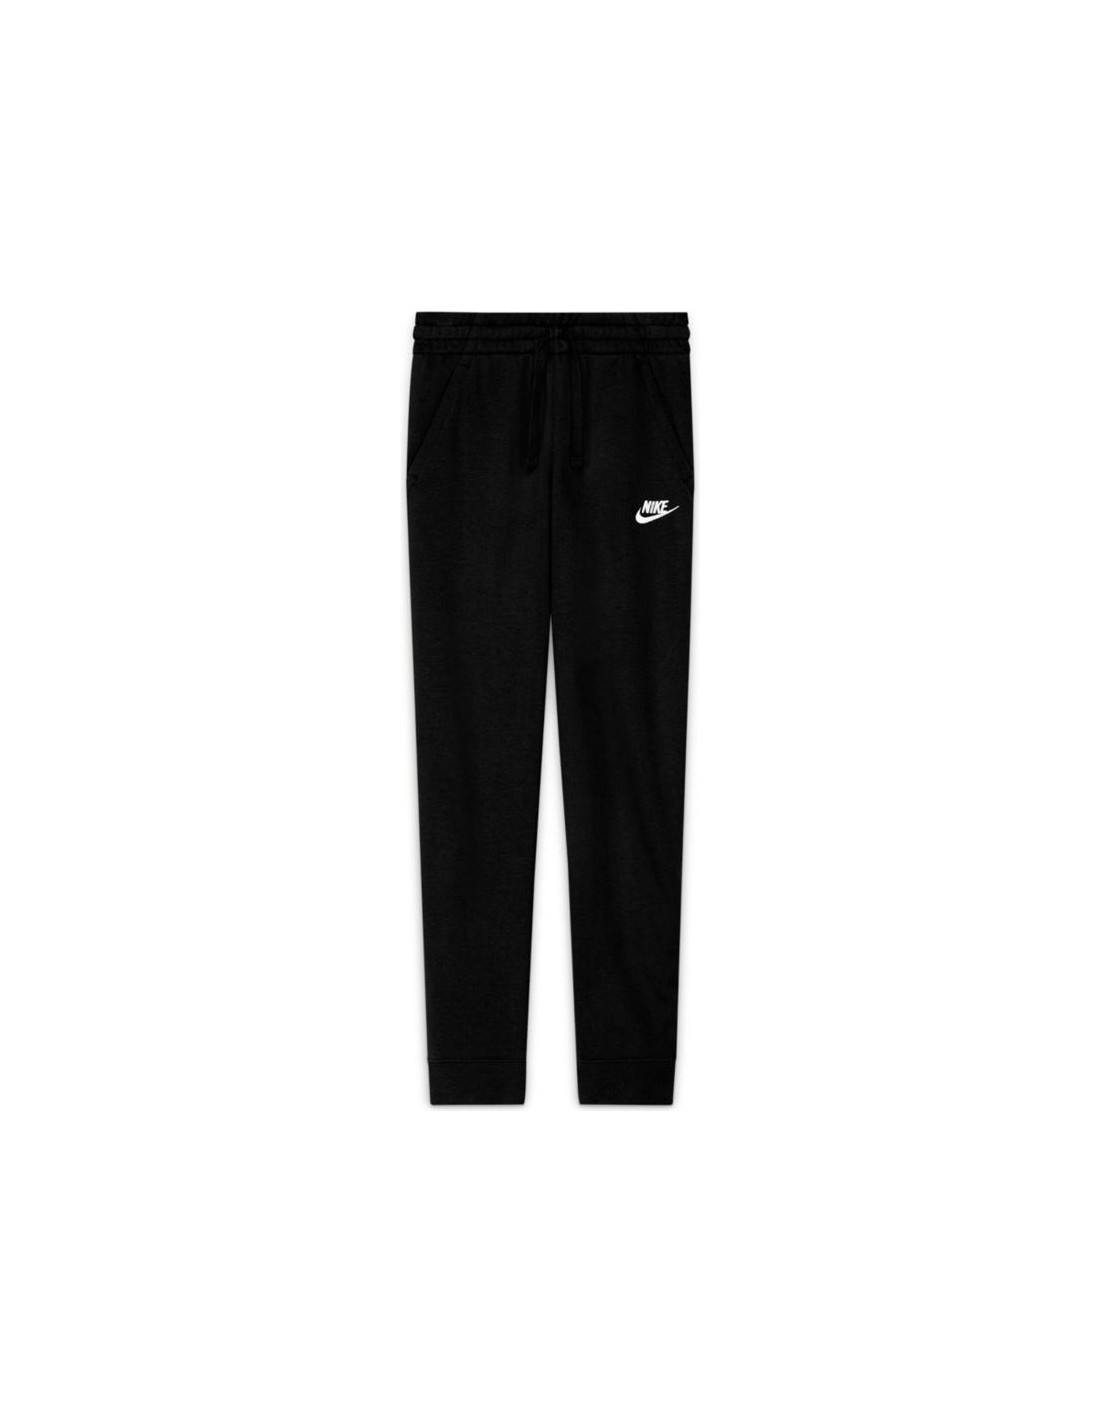 Pantalones nike sportswear club fleece negro